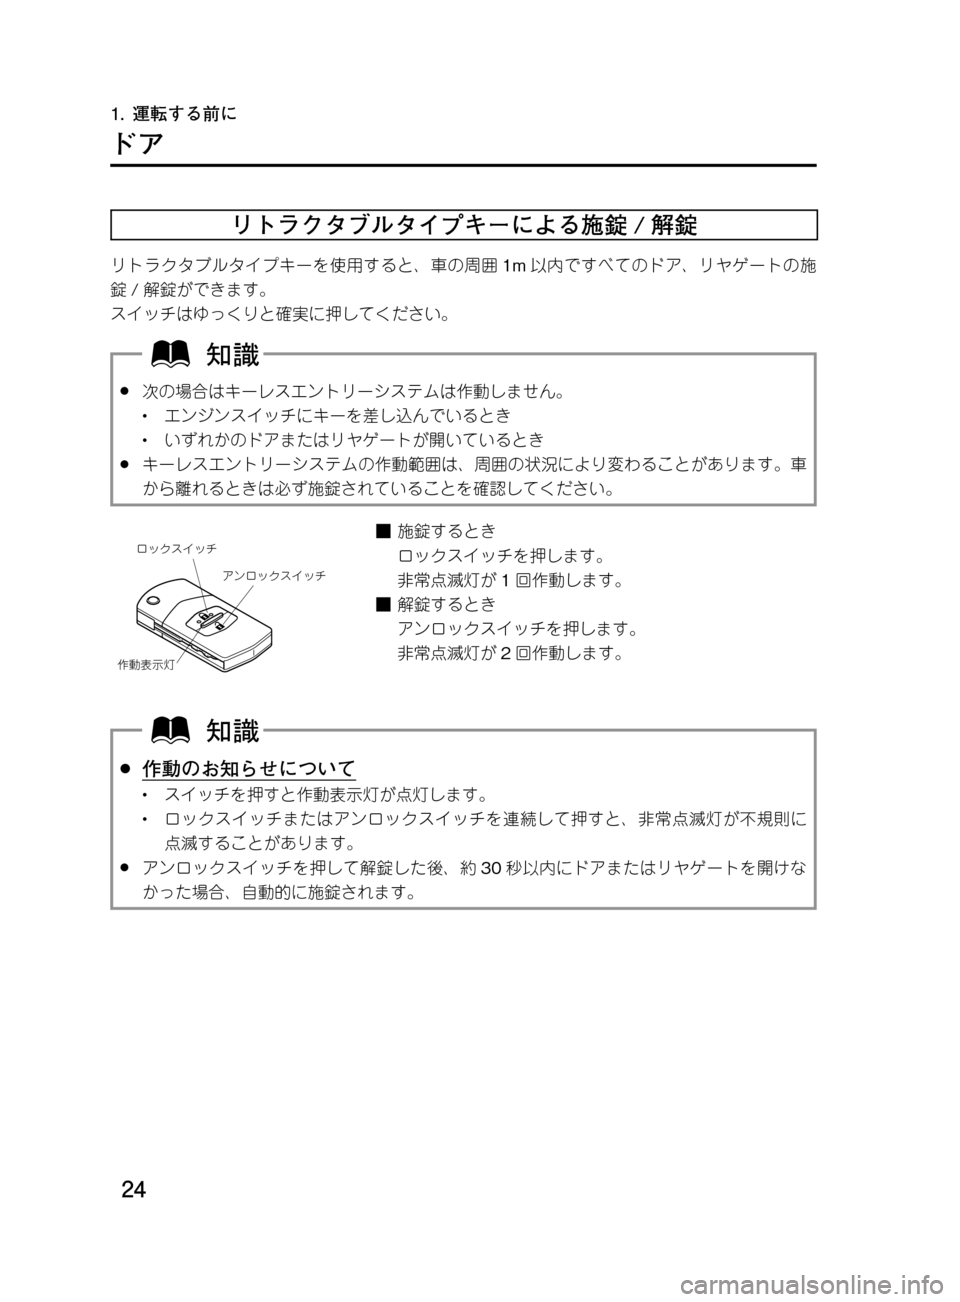 MAZDA MODEL DEMIO 2011  デミオ｜取扱説明書 (in Japanese) ��
��P�S�N��/�P���% 